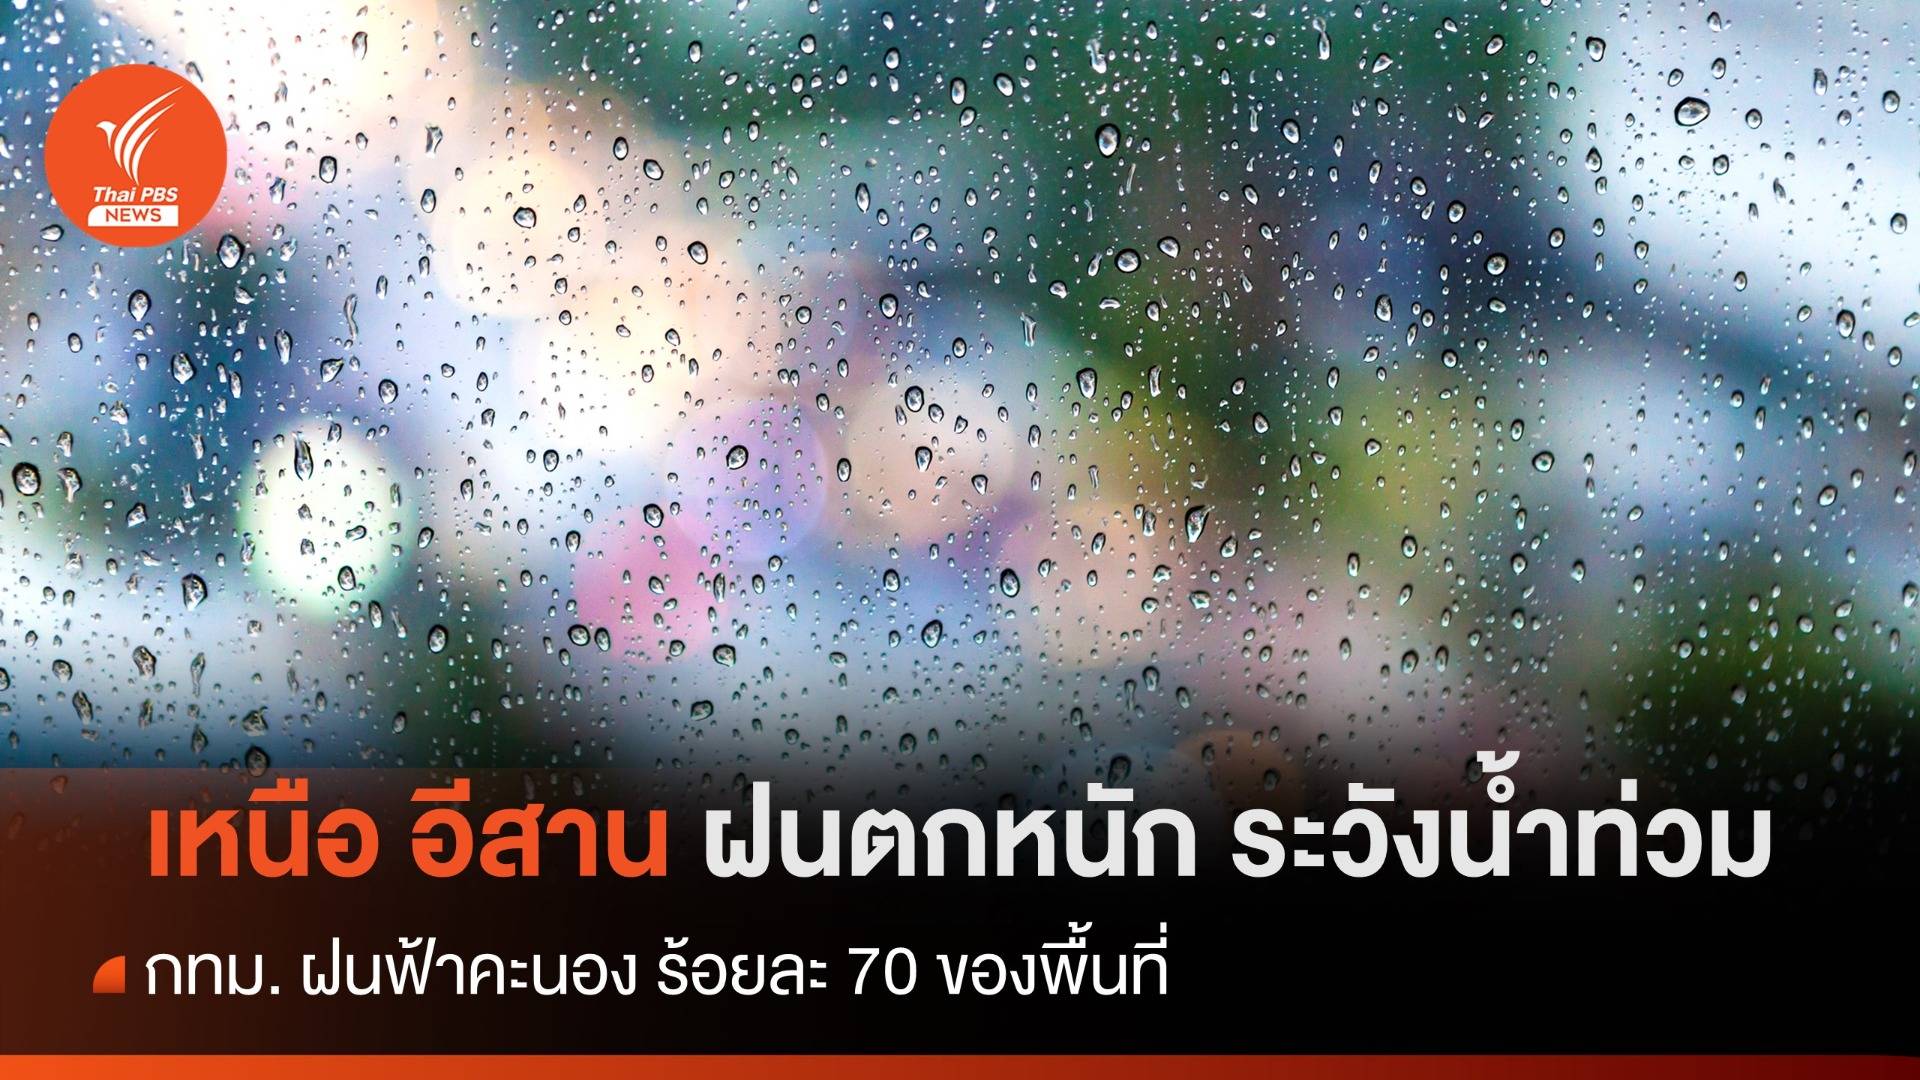 สภาพอากาศวันนี้ เหนือ อีสาน ฝนตกหนักระวังน้ำท่วม - กทม. เจอฝน 70%